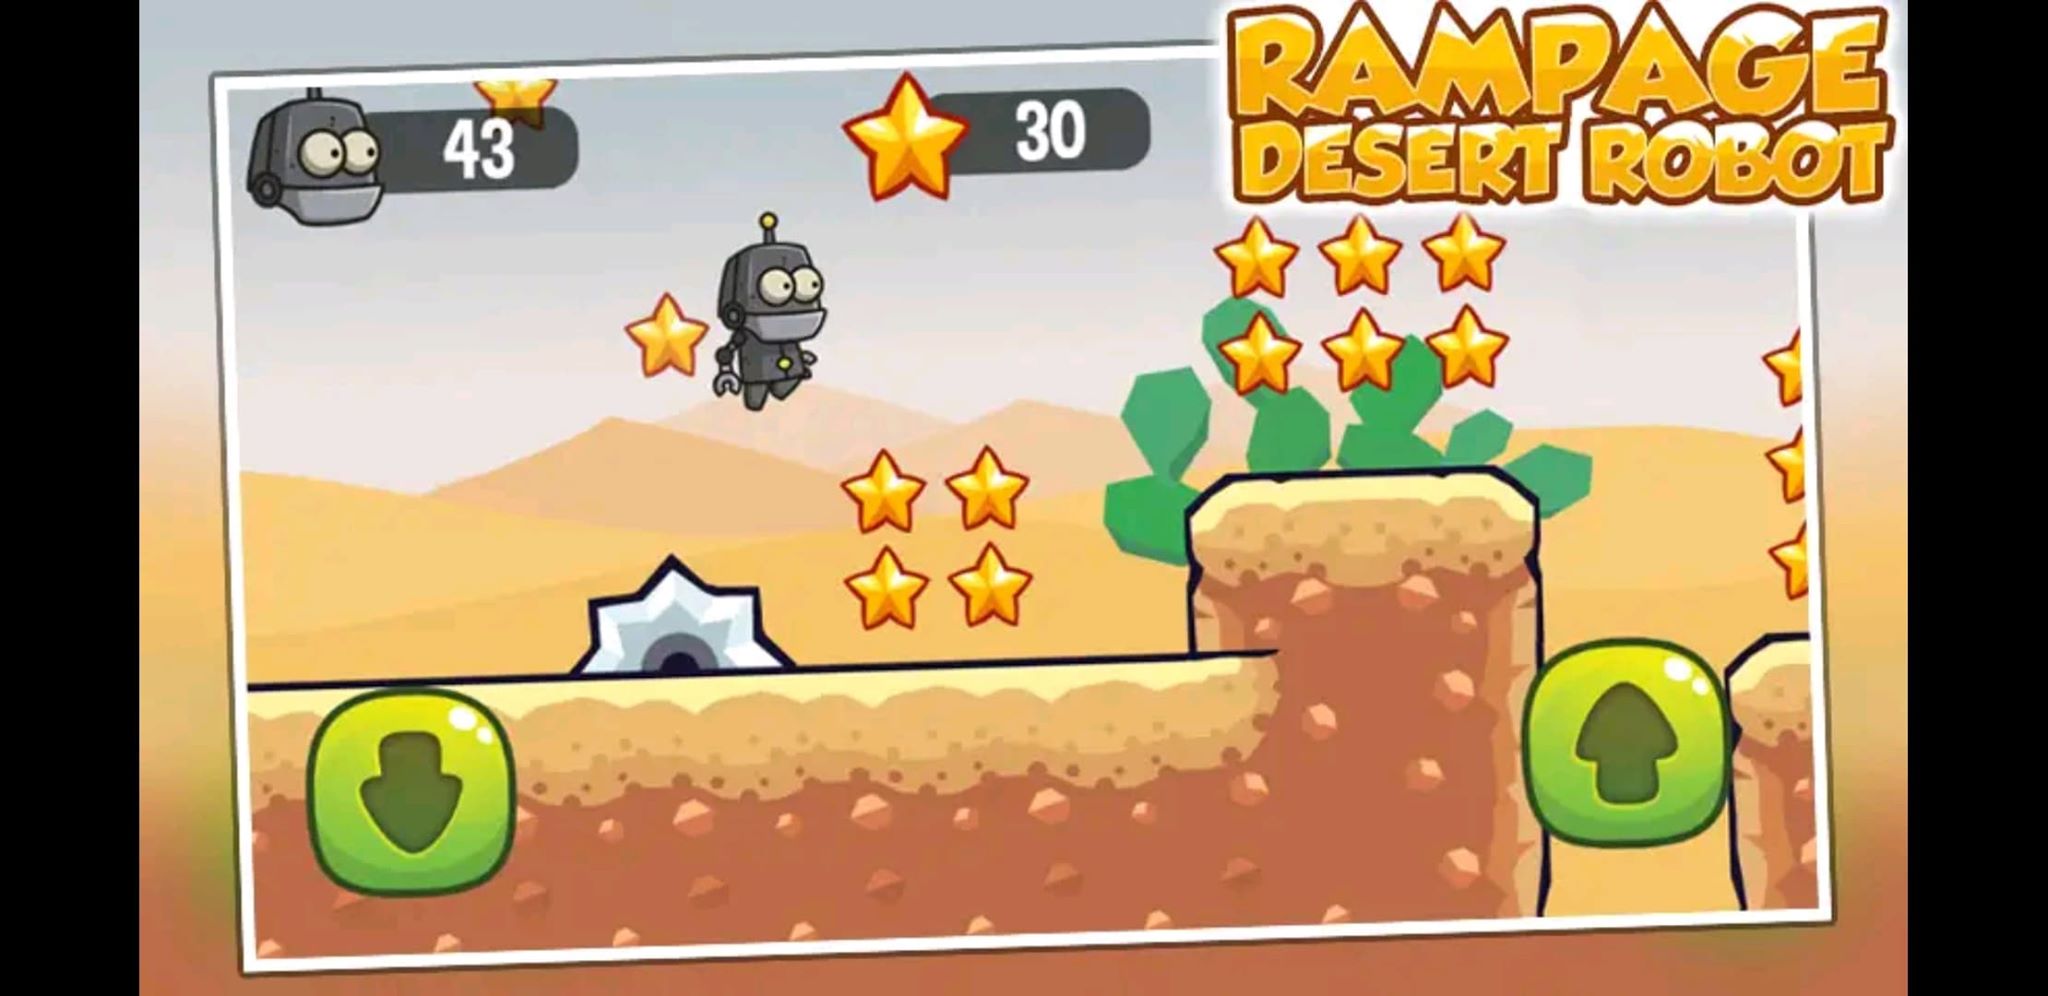 Rampage Desert Robot